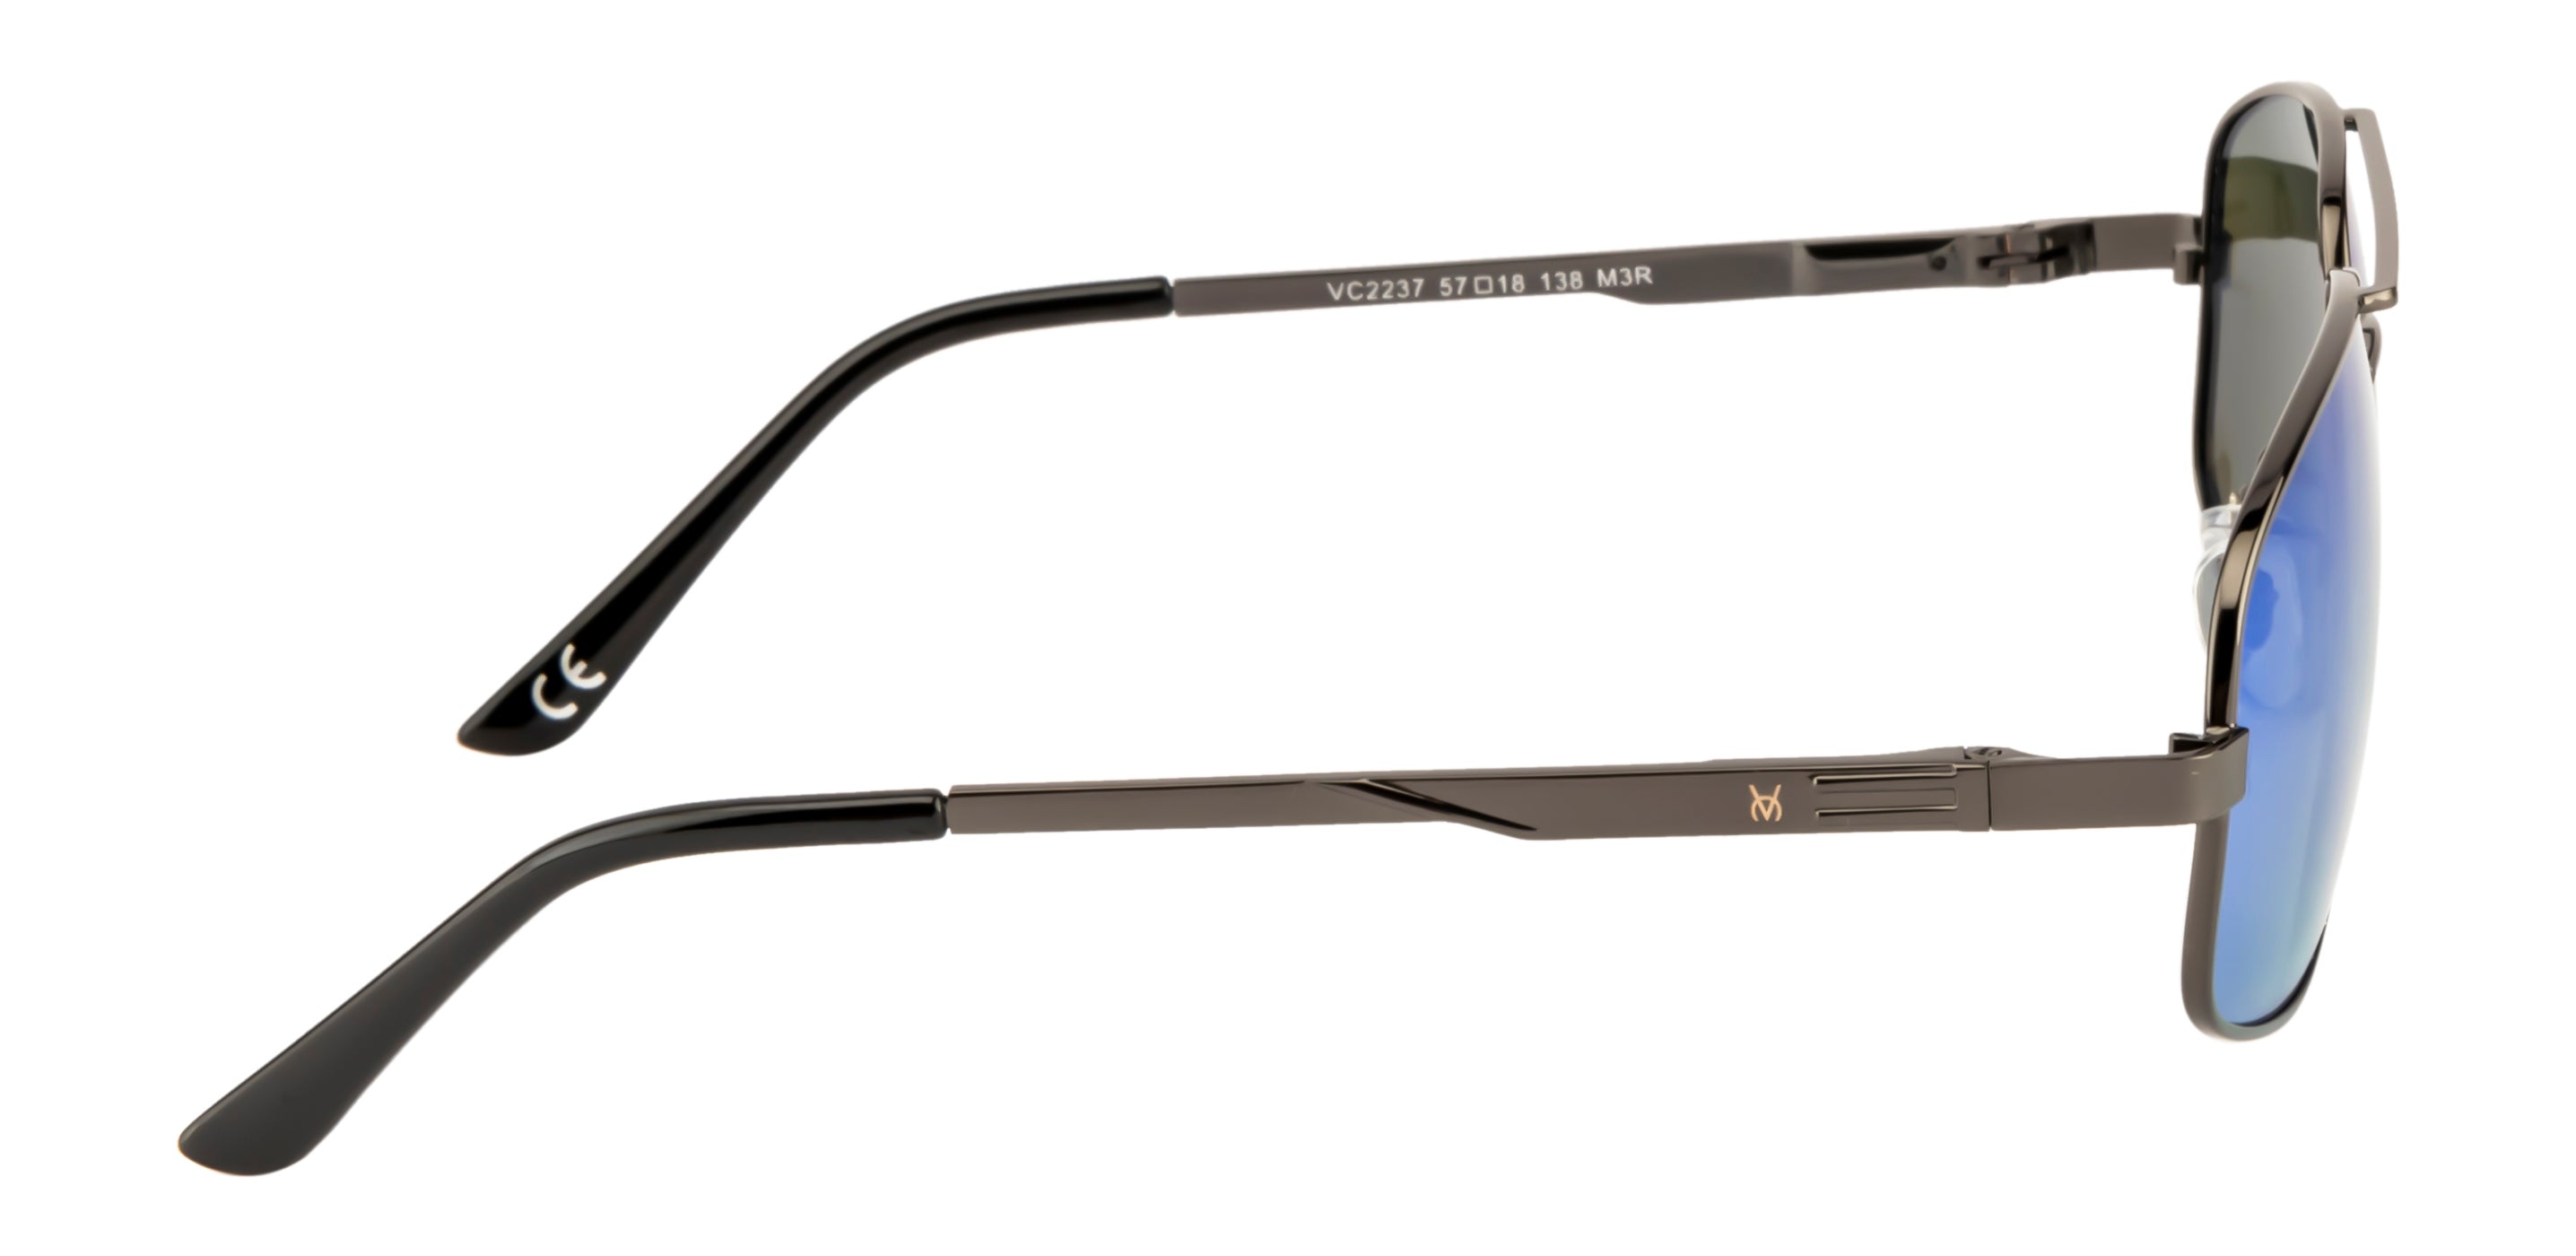 Velocity Polarized Rectangular Series POL Sunglasses for Men